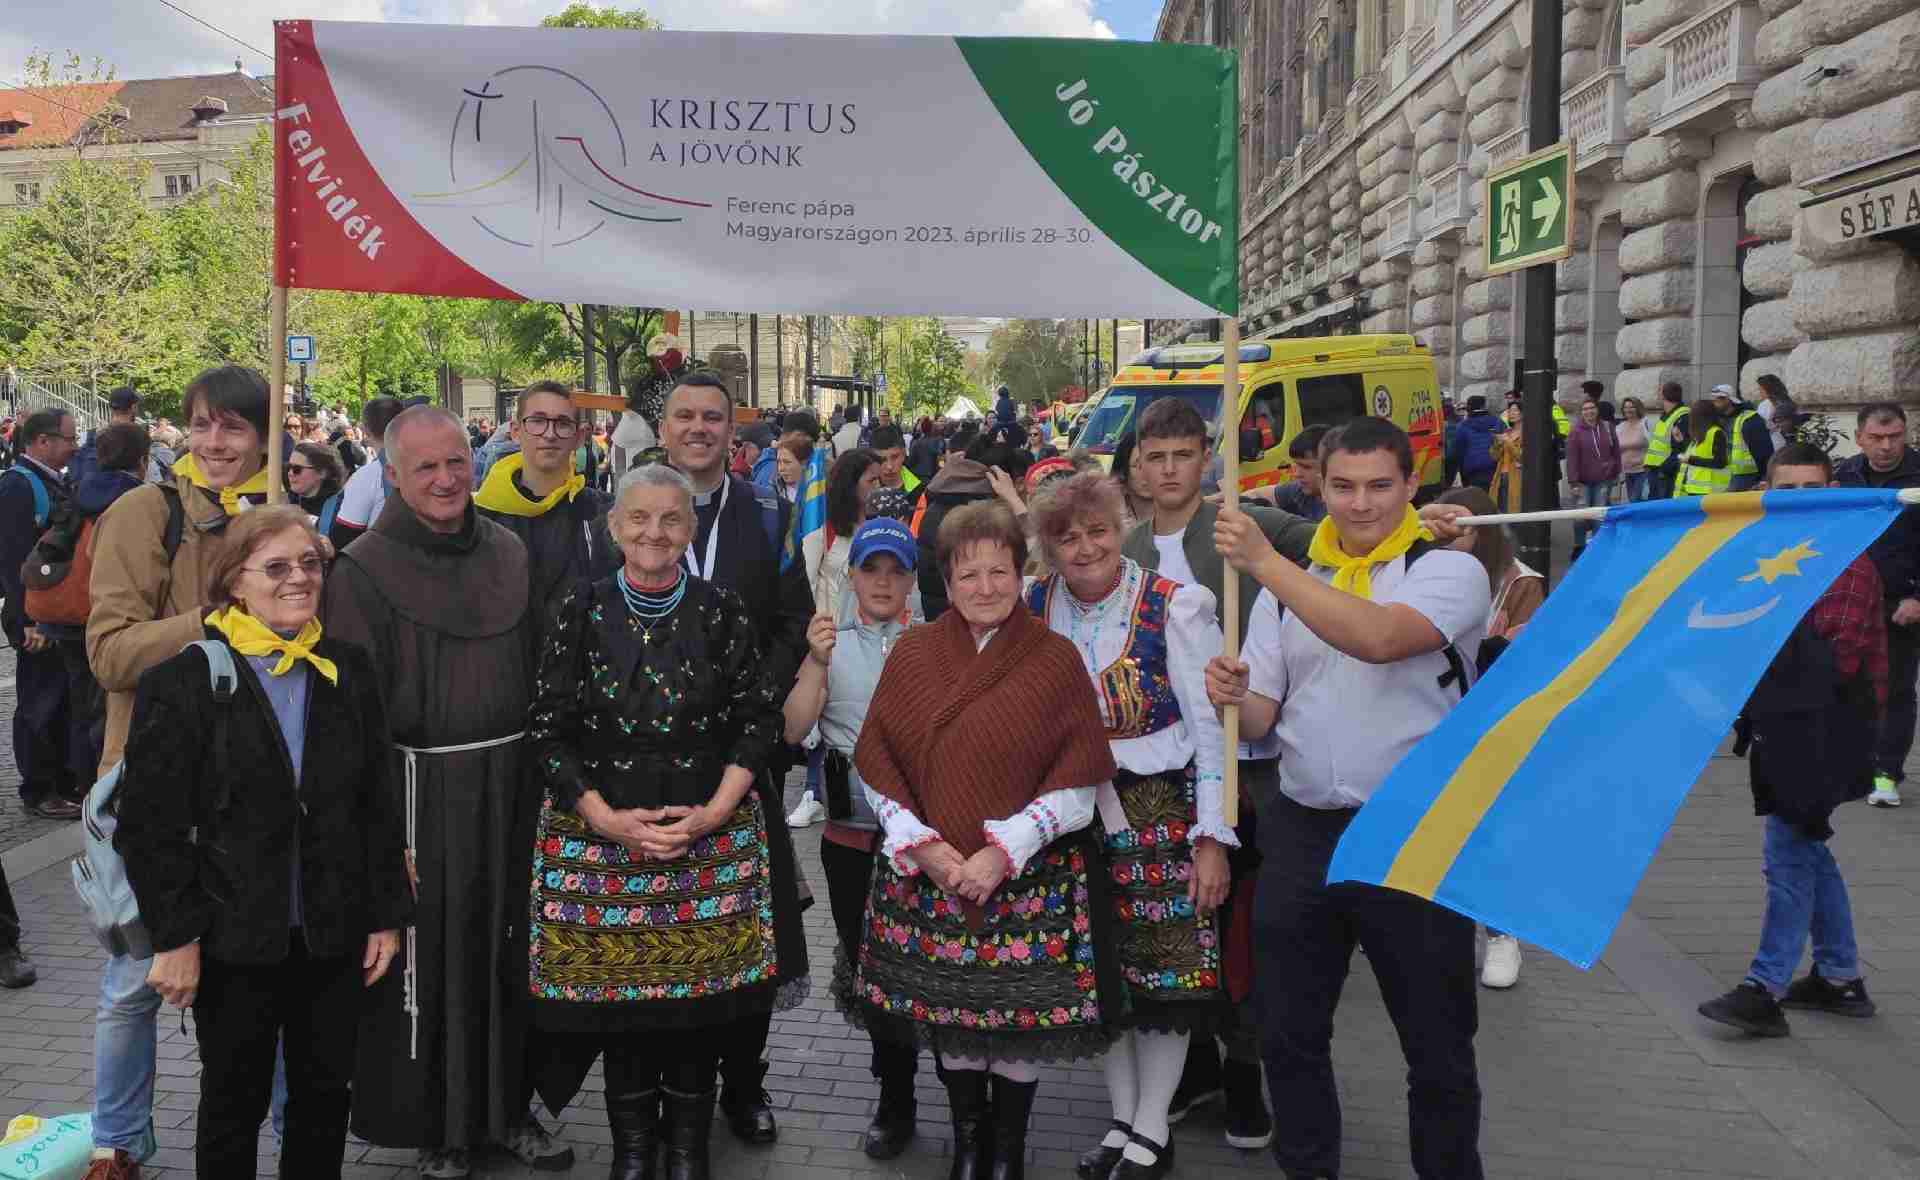 Pápalátogatás Budapesten szlovákiai magyarokkal
